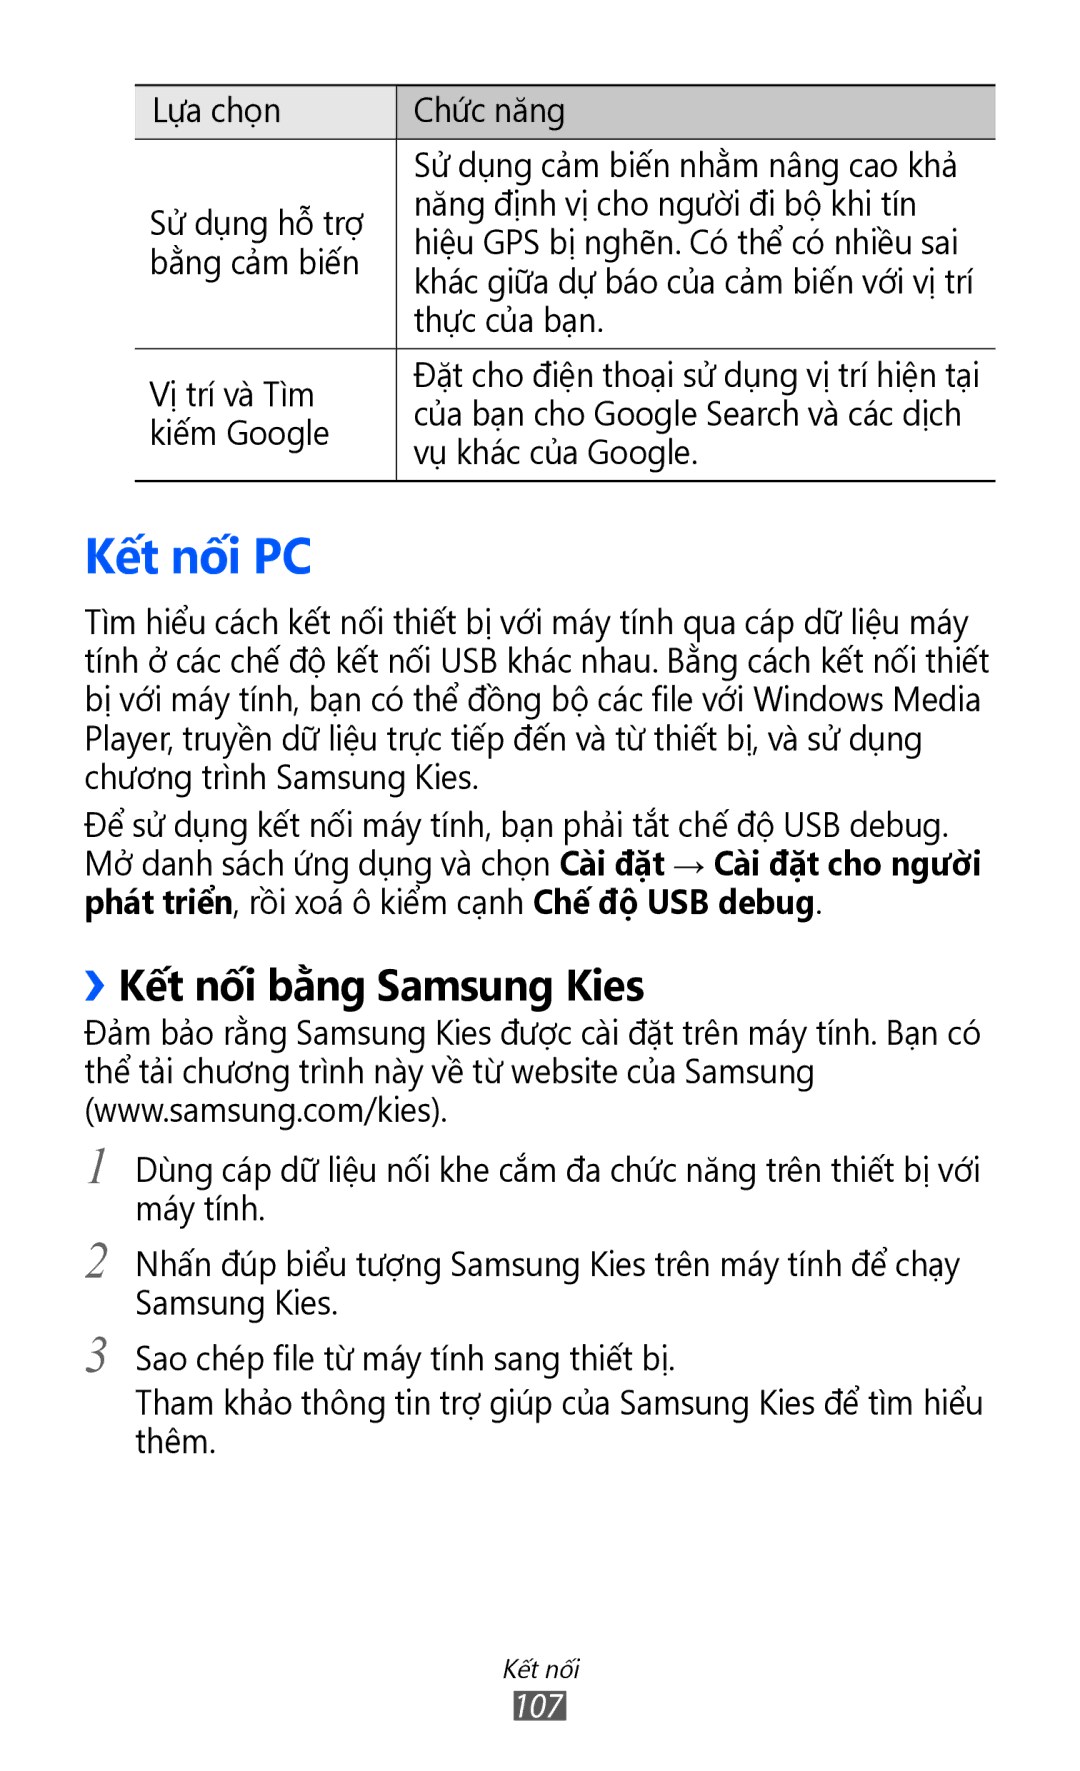 Samsung GT-I9100RWAXEV, GT-I9100LKAXXV, GT-I9100RWAXXV manual Kết nối PC, ››Kết nối bằng Samsung Kies 